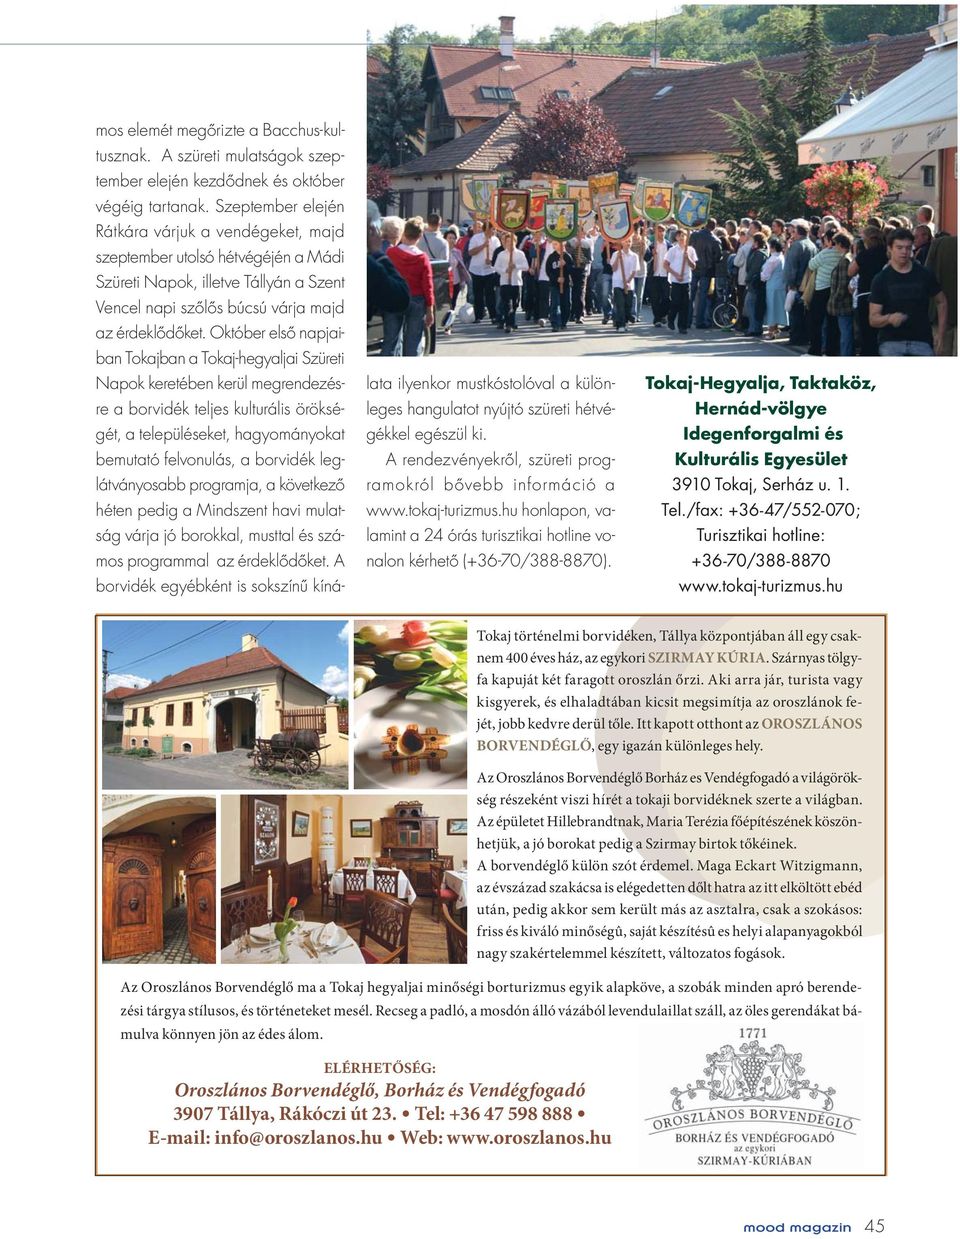 Október elsô napjaiban Tokajban a Tokaj-hegyaljai Szüreti Napok keretében kerül megrendezésre a borvidék teljes kulturális örökségét, a településeket, hagyományokat bemutató felvonulás, a borvidék